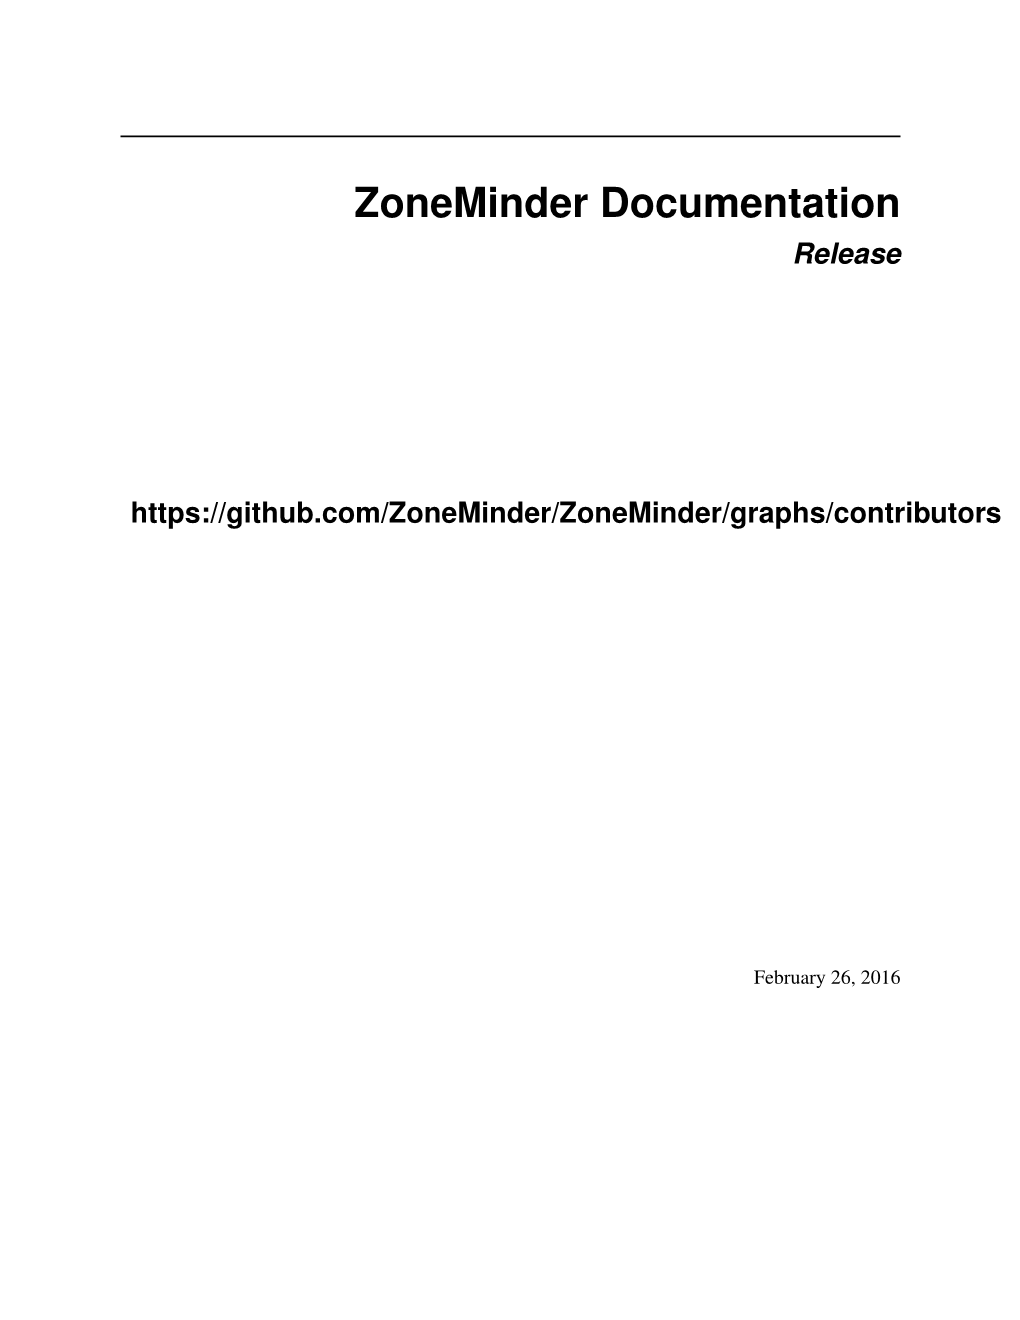 Zoneminder Documentation Release